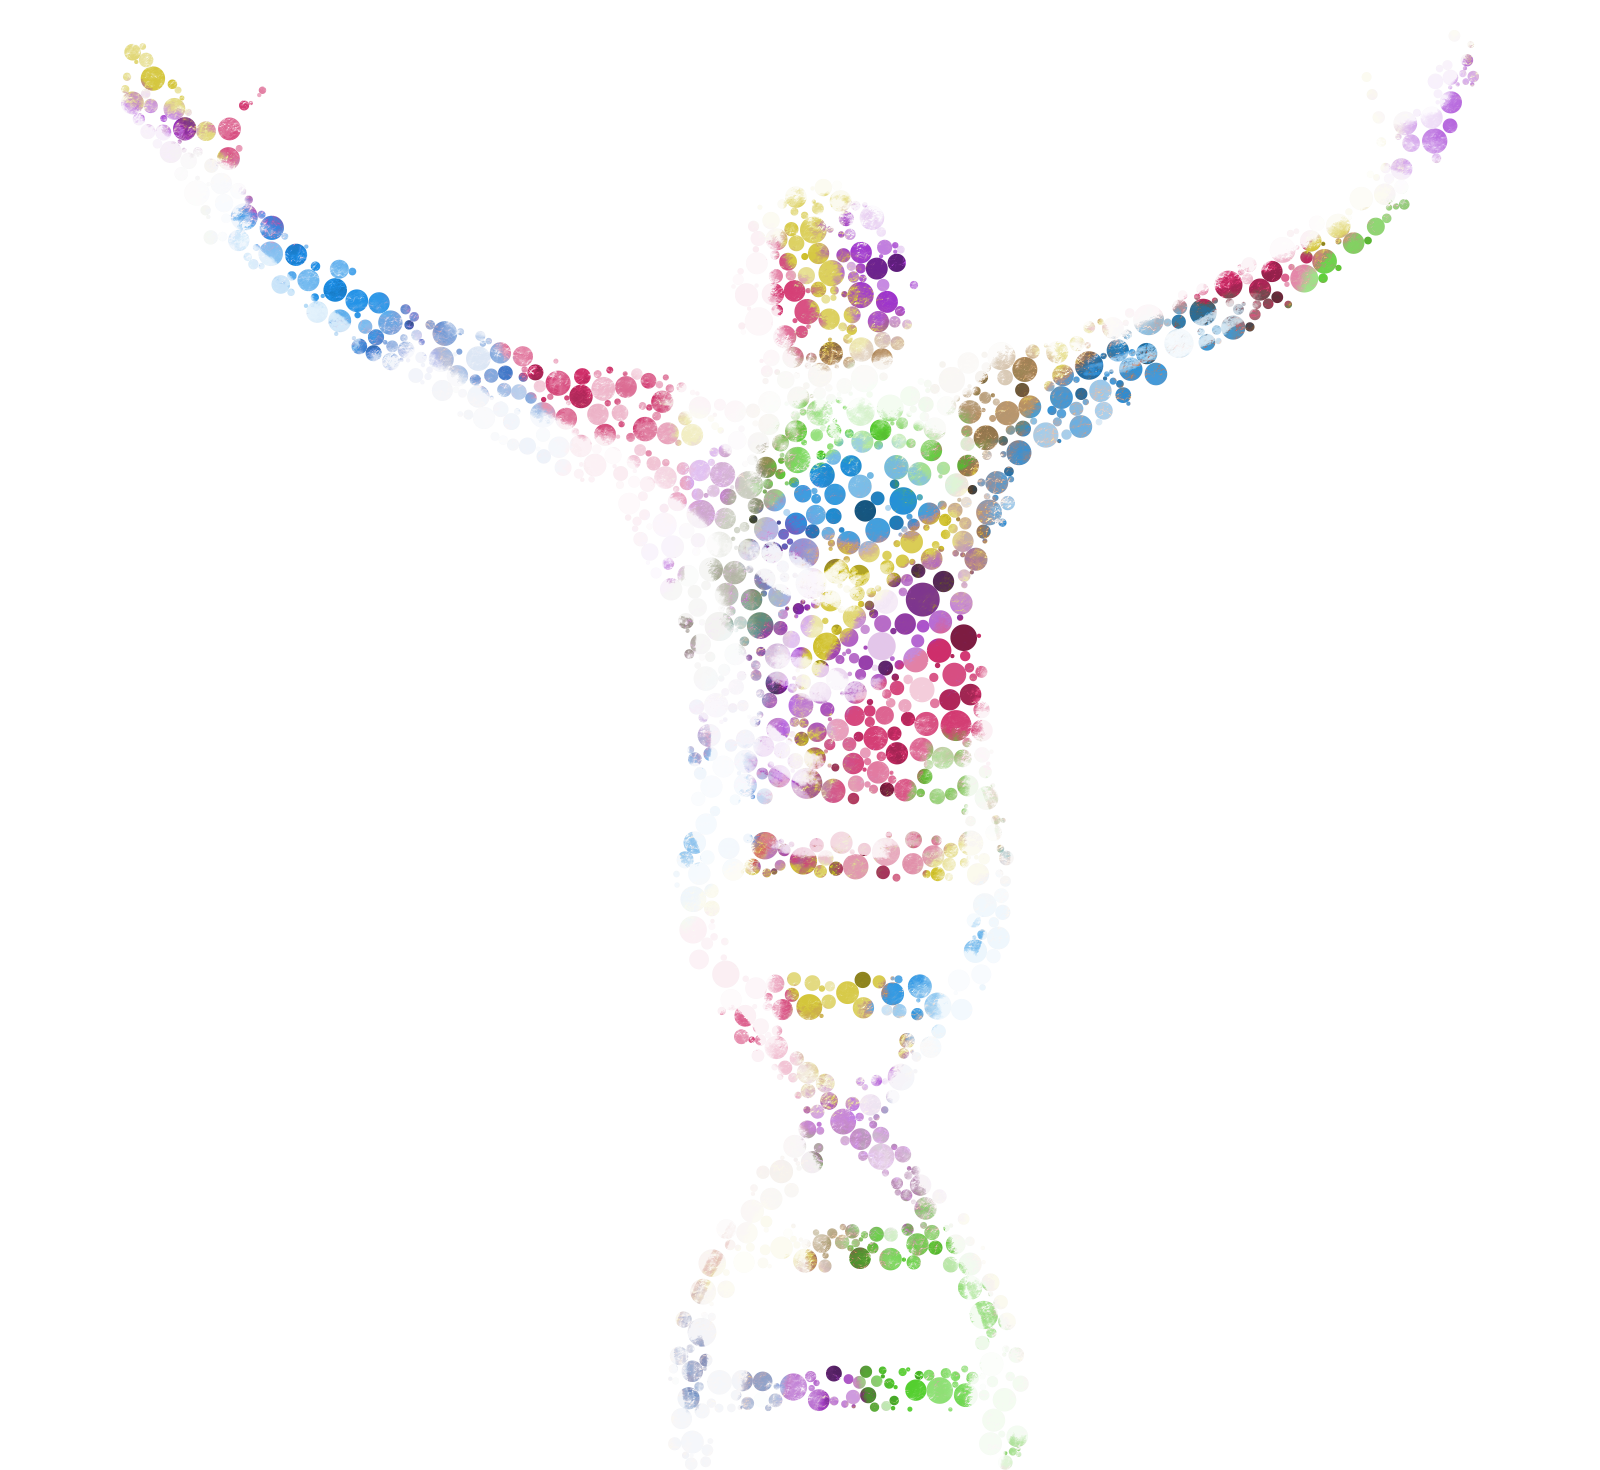 Genomic Medicine Sweden DNA